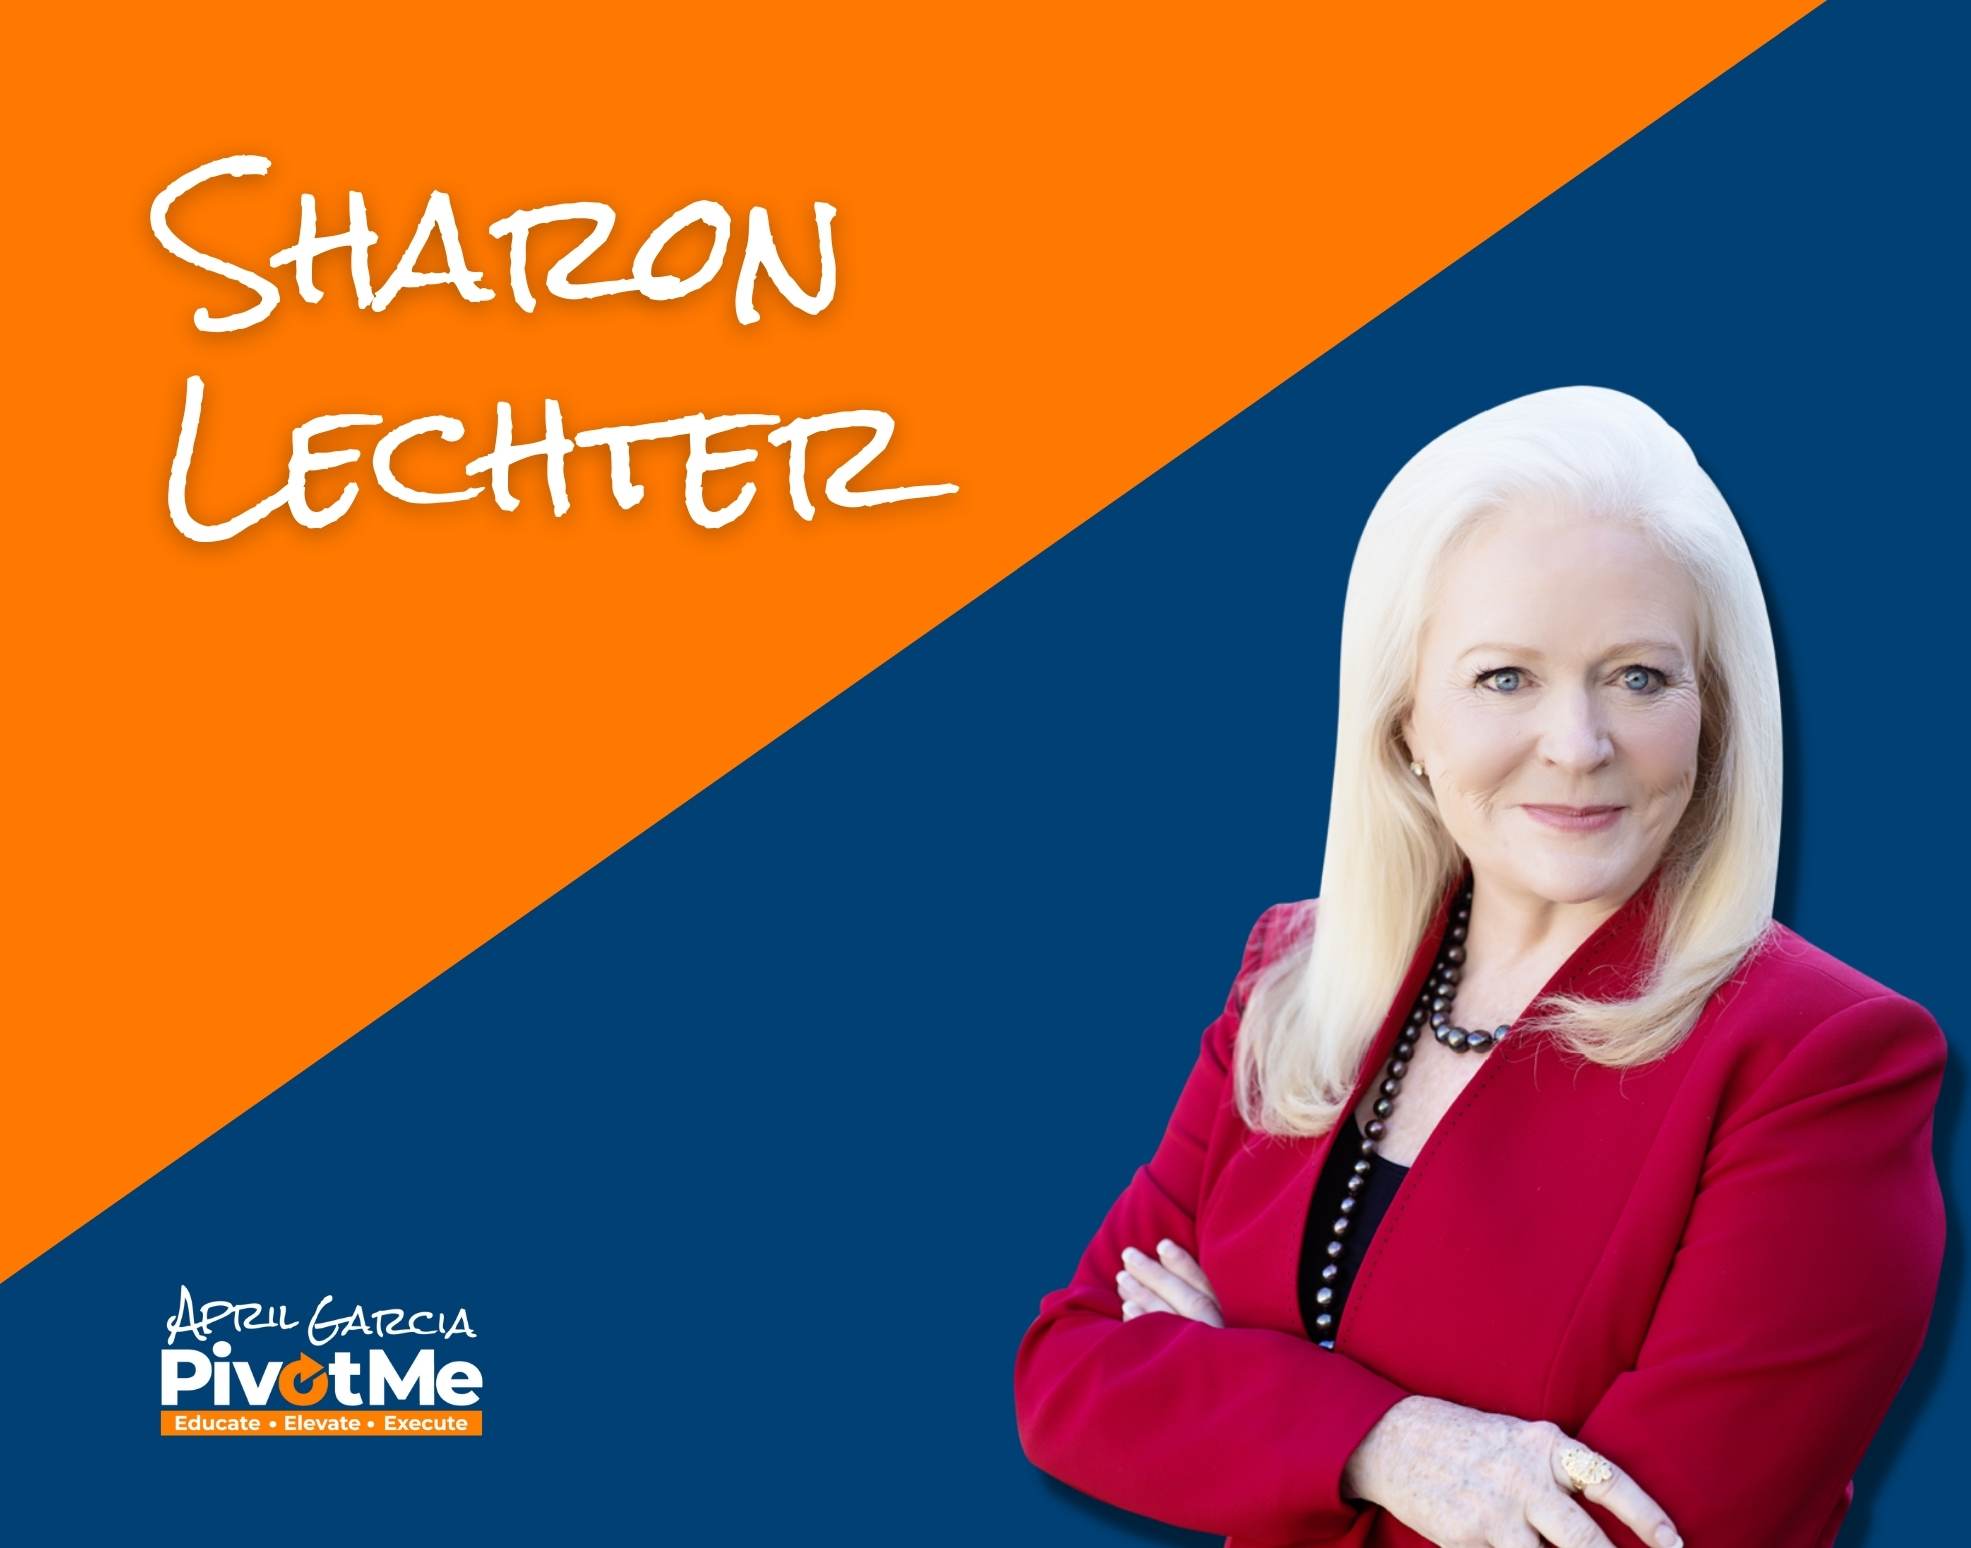 Sharon Lechter